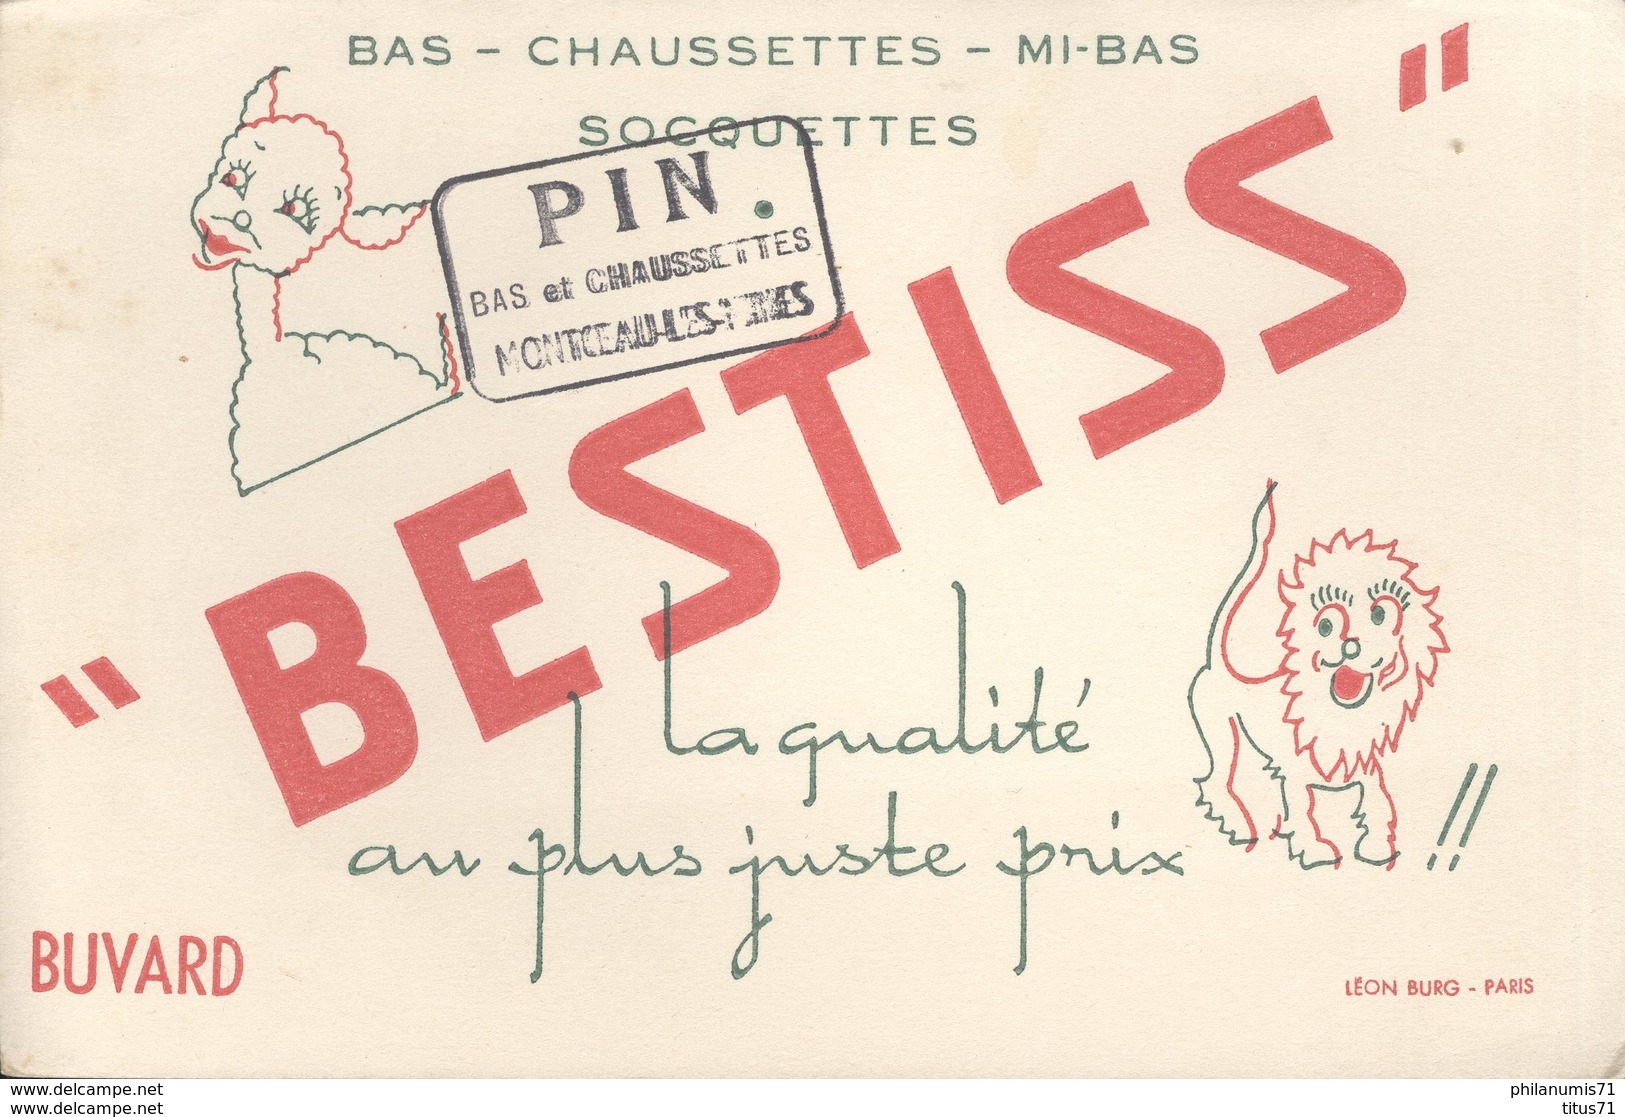 Buvard  Bestiss - Bas Chaussettes Mi Bas Socquettes -Tampon Pin Montceau Les Mines - Très Bon état - Textile & Vestimentaire